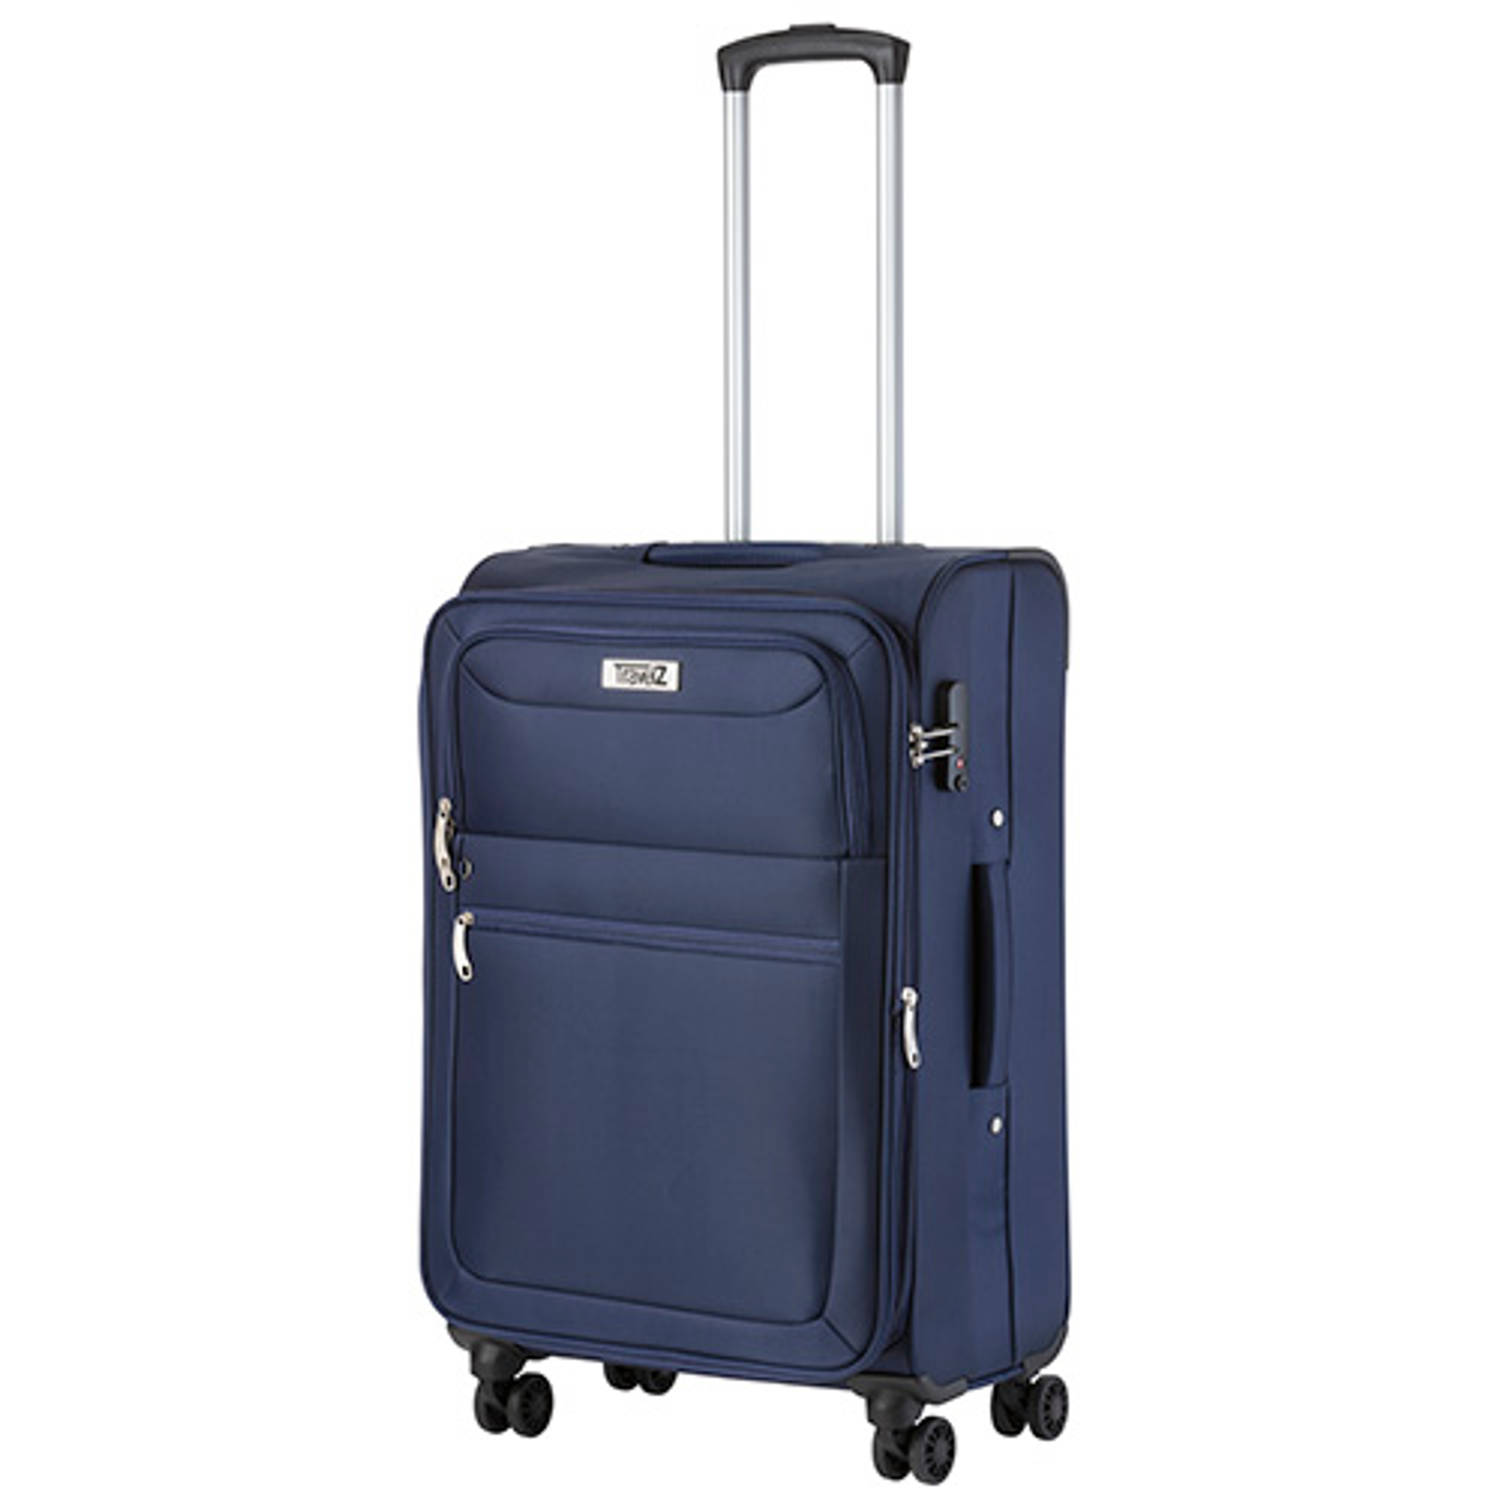 Travelz Softspinner TSA Reiskoffer - Trolley 67cm en 74+11 Ltr met expander - Blauw